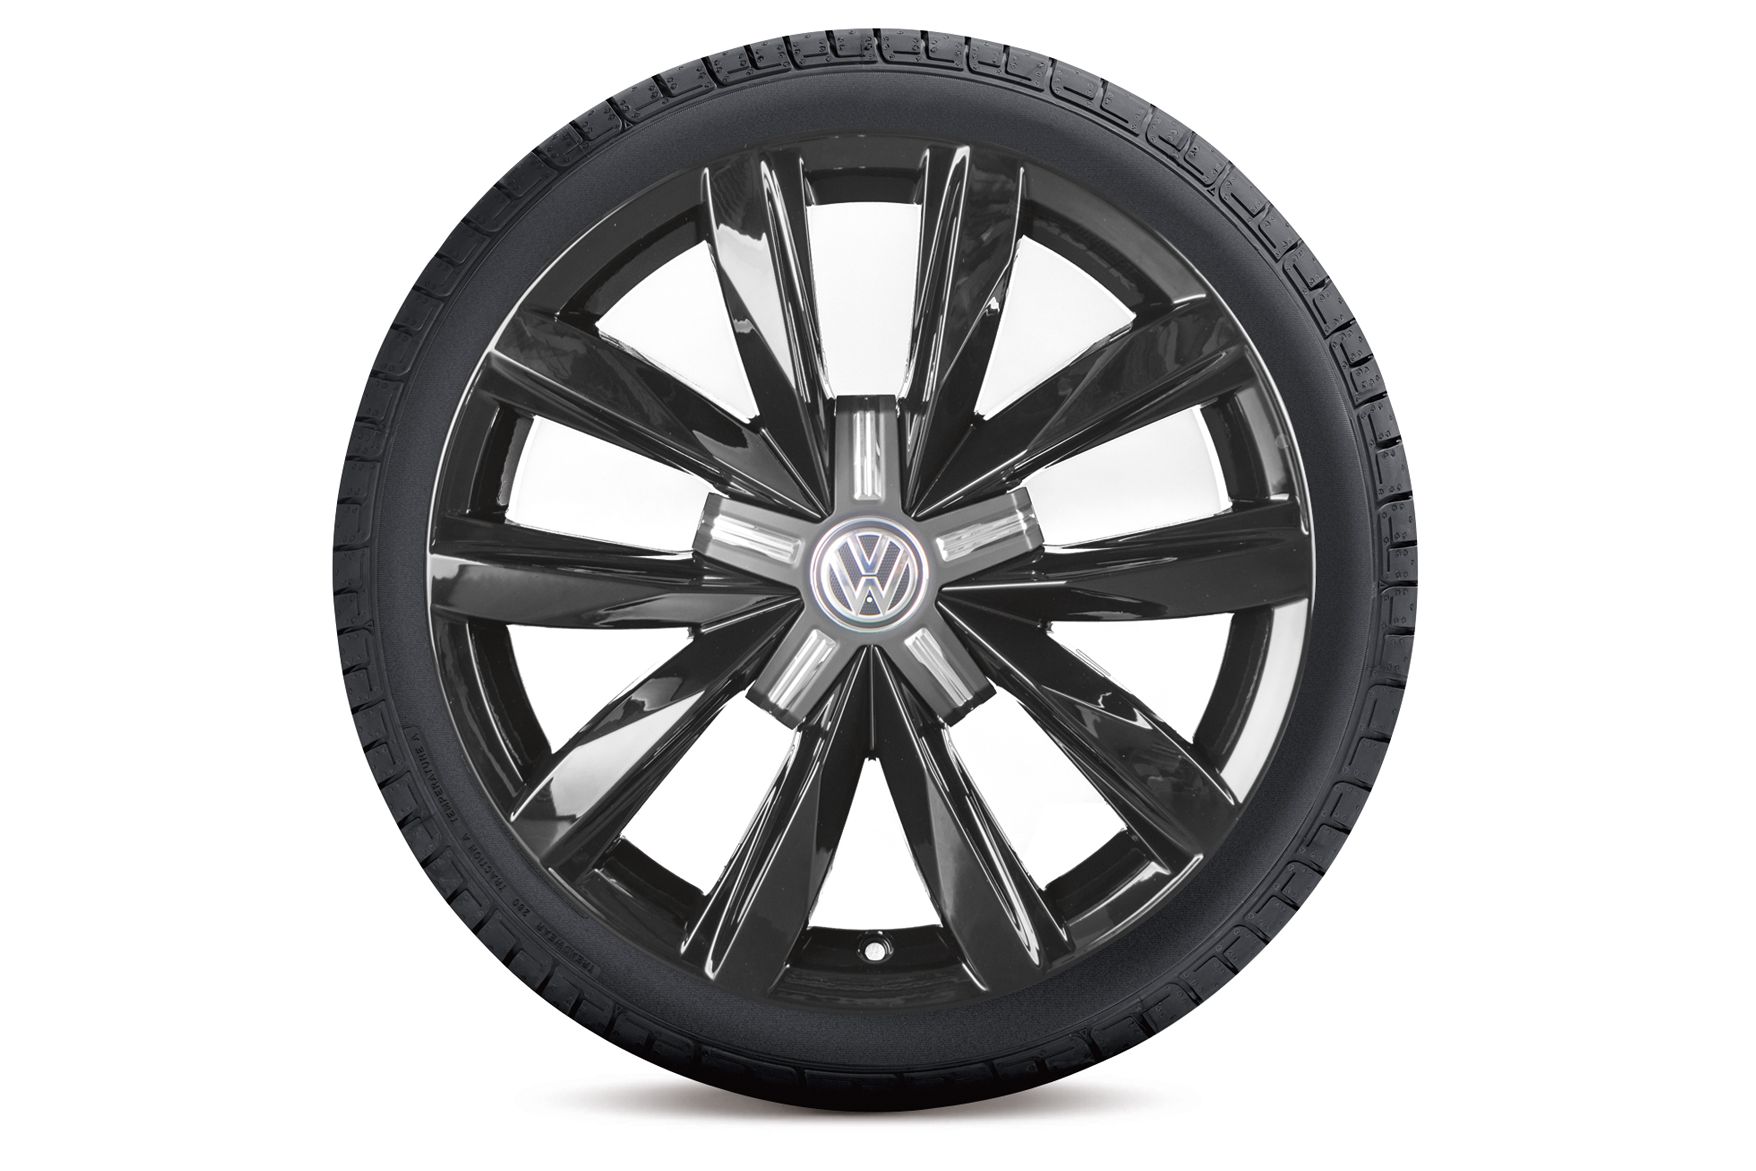 VW Volkswagen Springfield Winterkomplettrad in schwarz